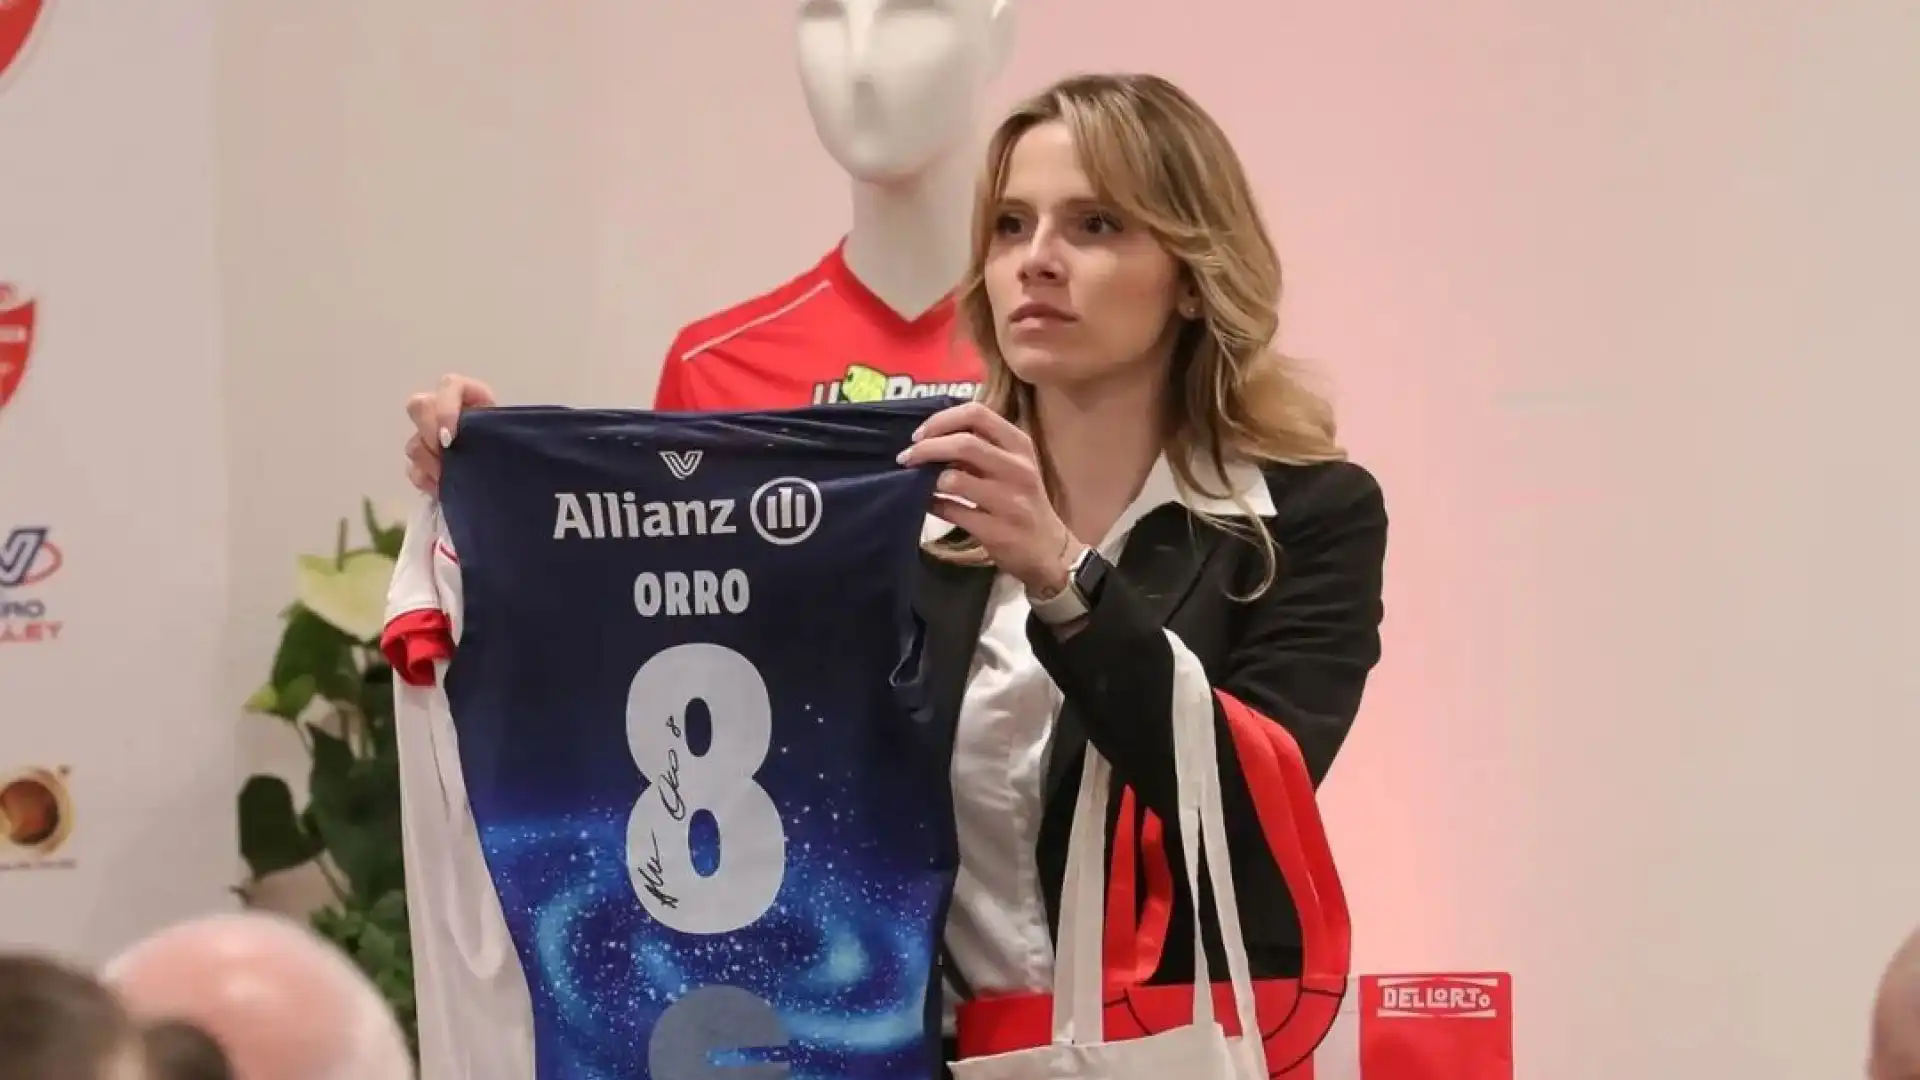 La maglia di Alessia Orro in un pacchetto con biglietti dello stadio è stata venduta a 5.000 euro.